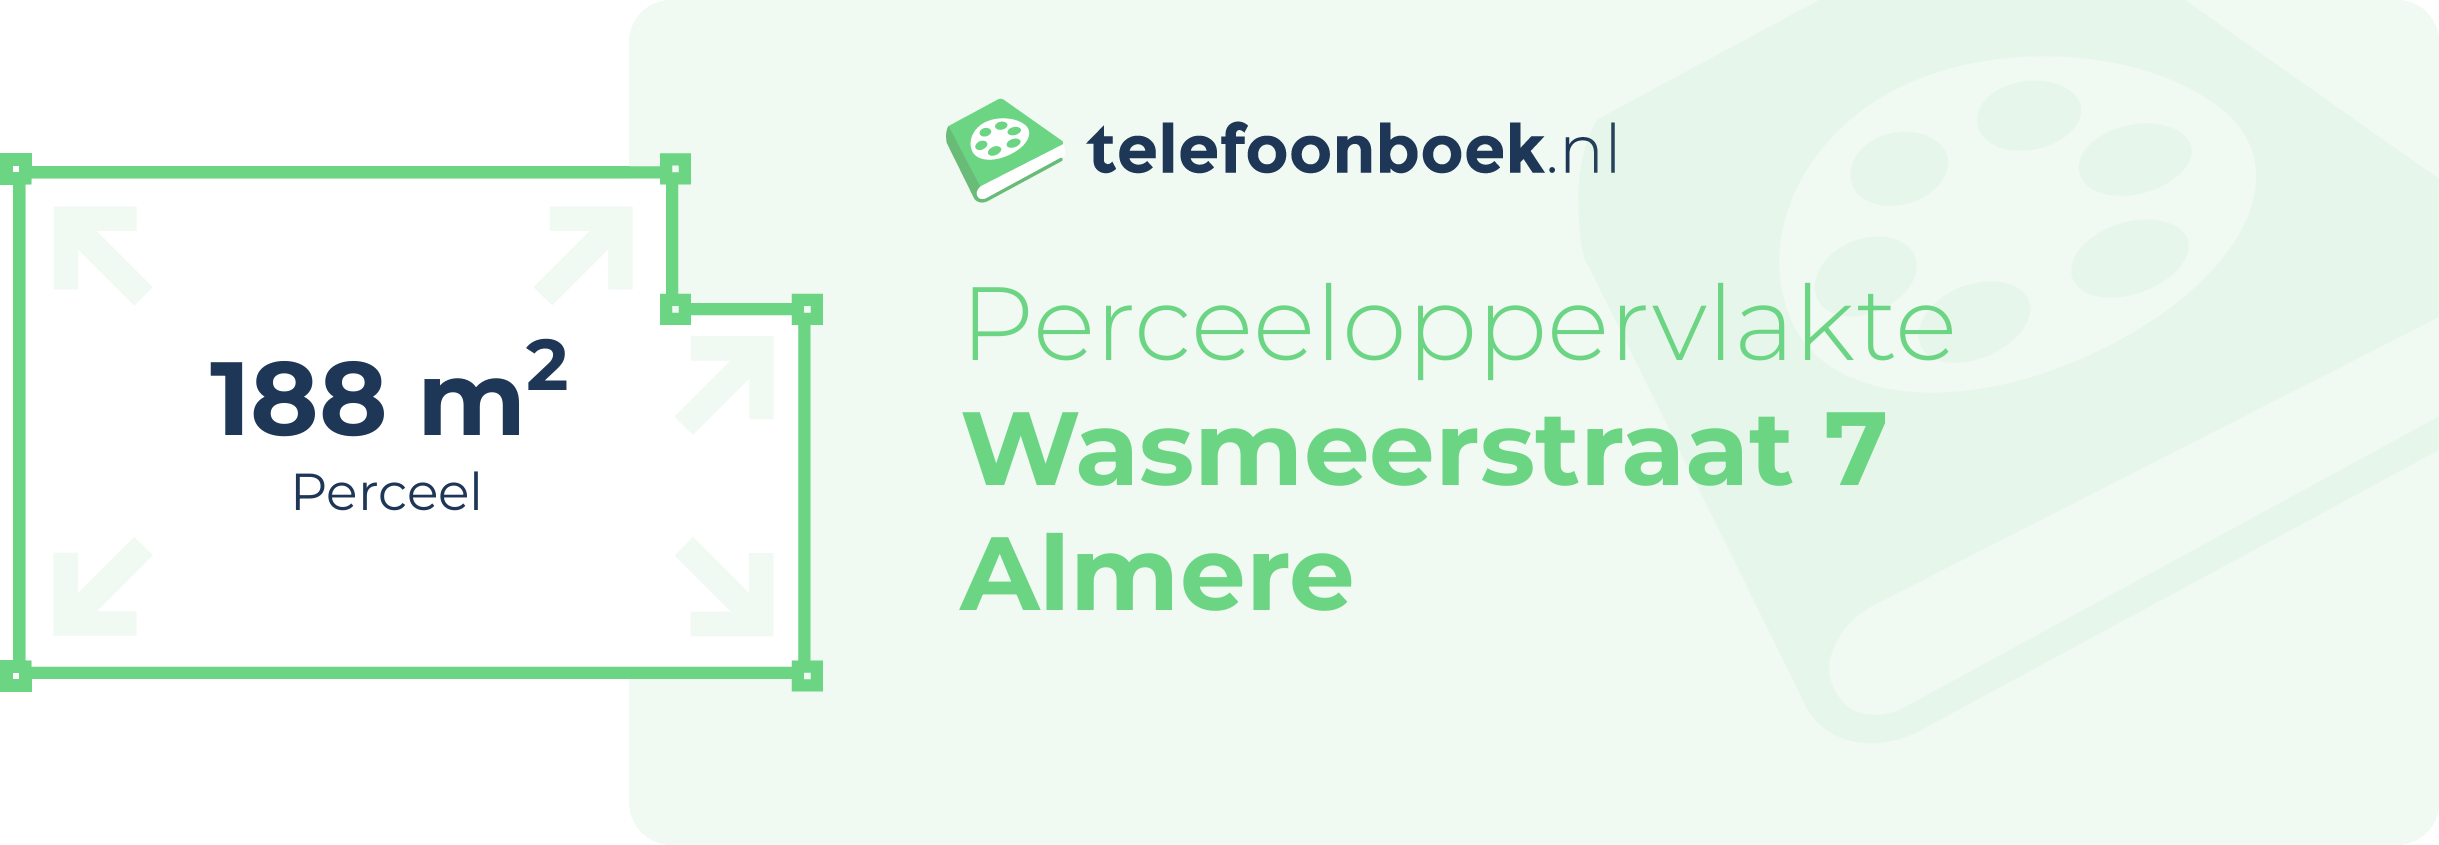 Perceeloppervlakte Wasmeerstraat 7 Almere